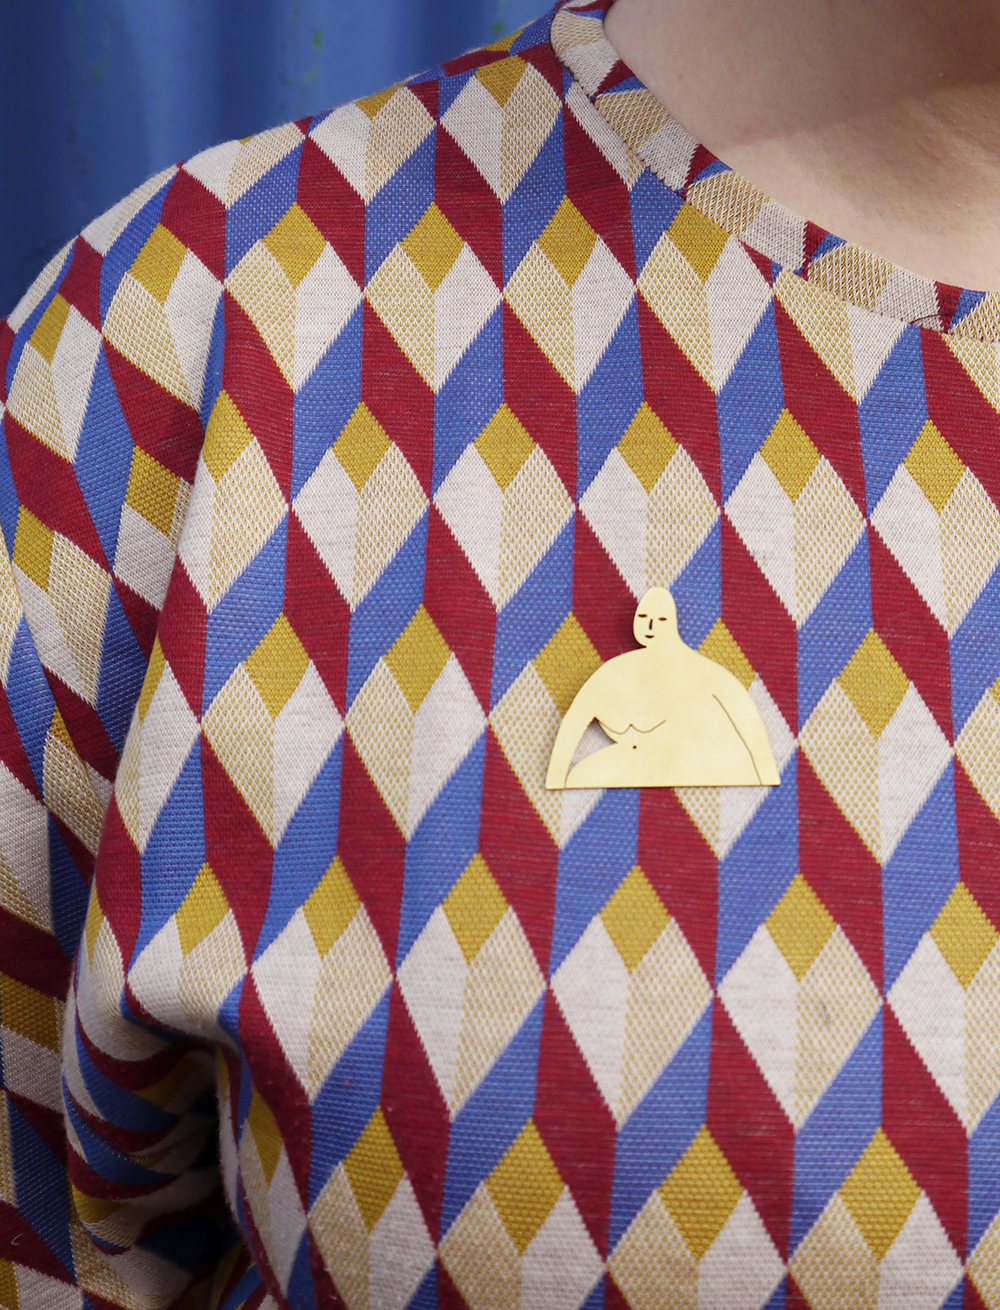 Brass pin shaped like a woman worn on a geometric patterened dress